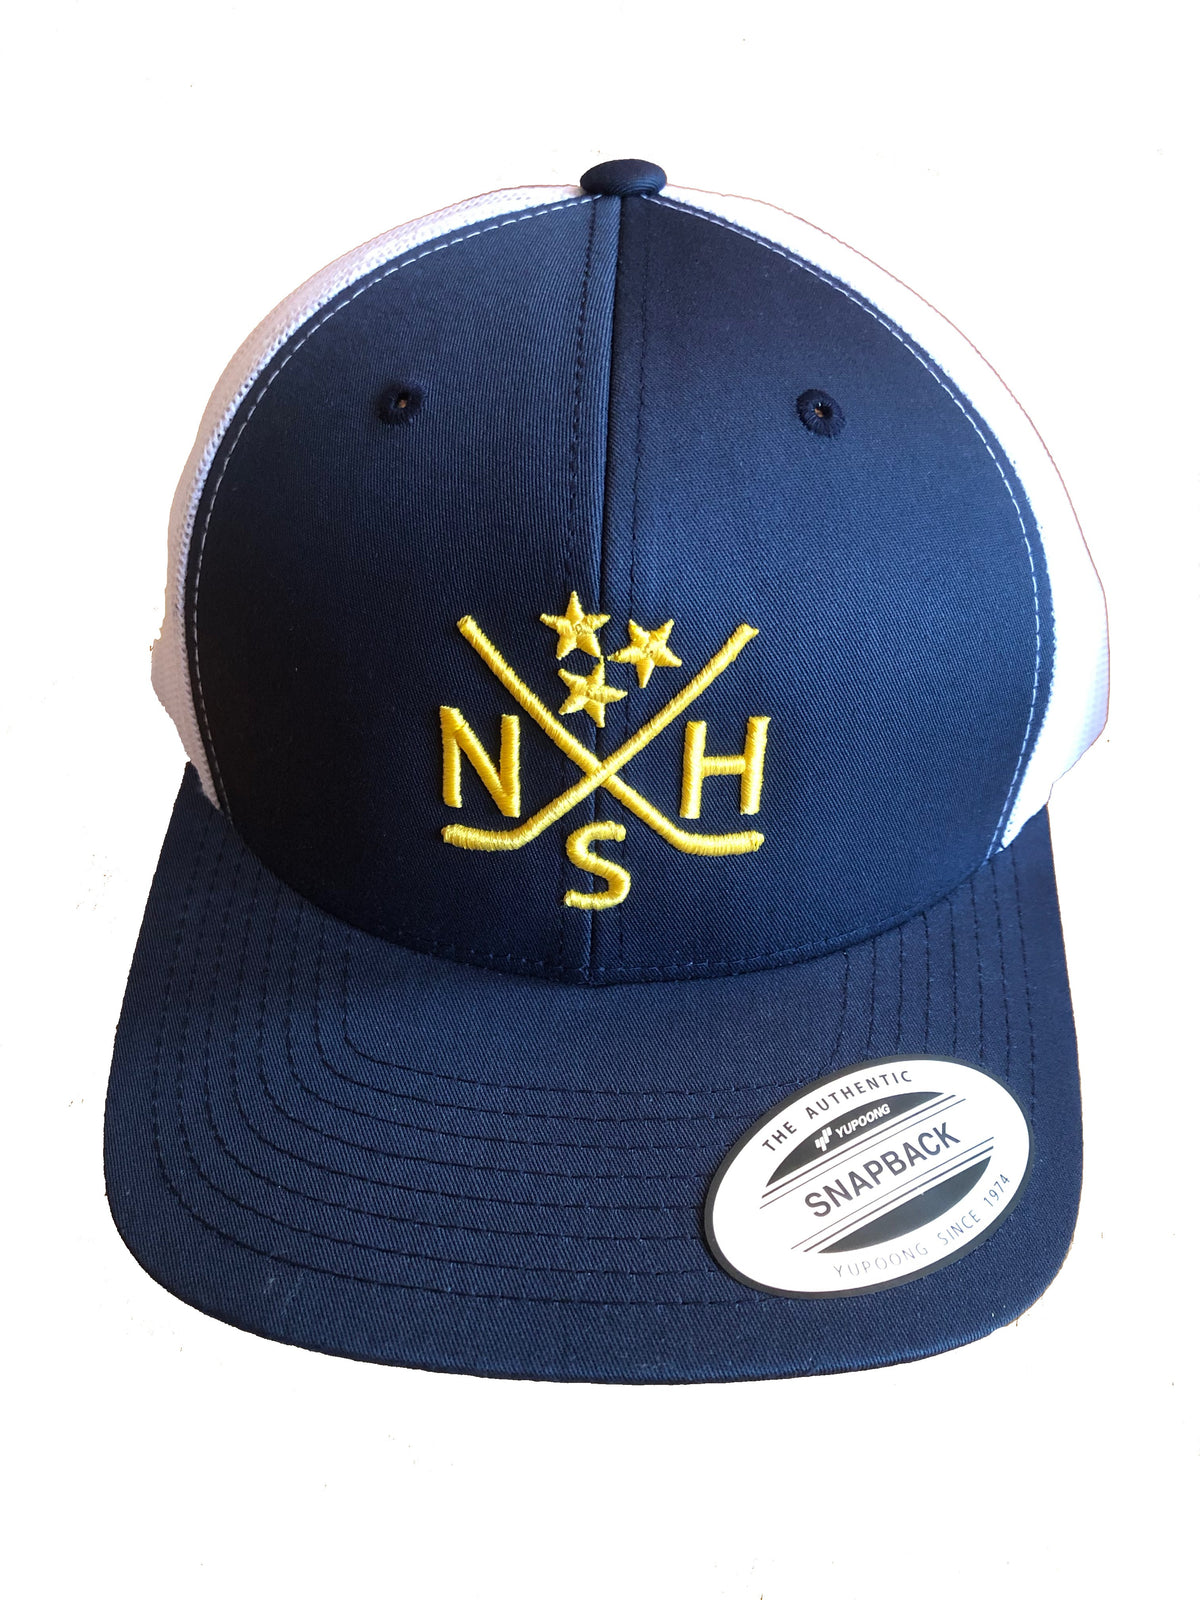 NSH X Hockey Sticks Hat Snapback (Navy/White) - So Nashville Clothing